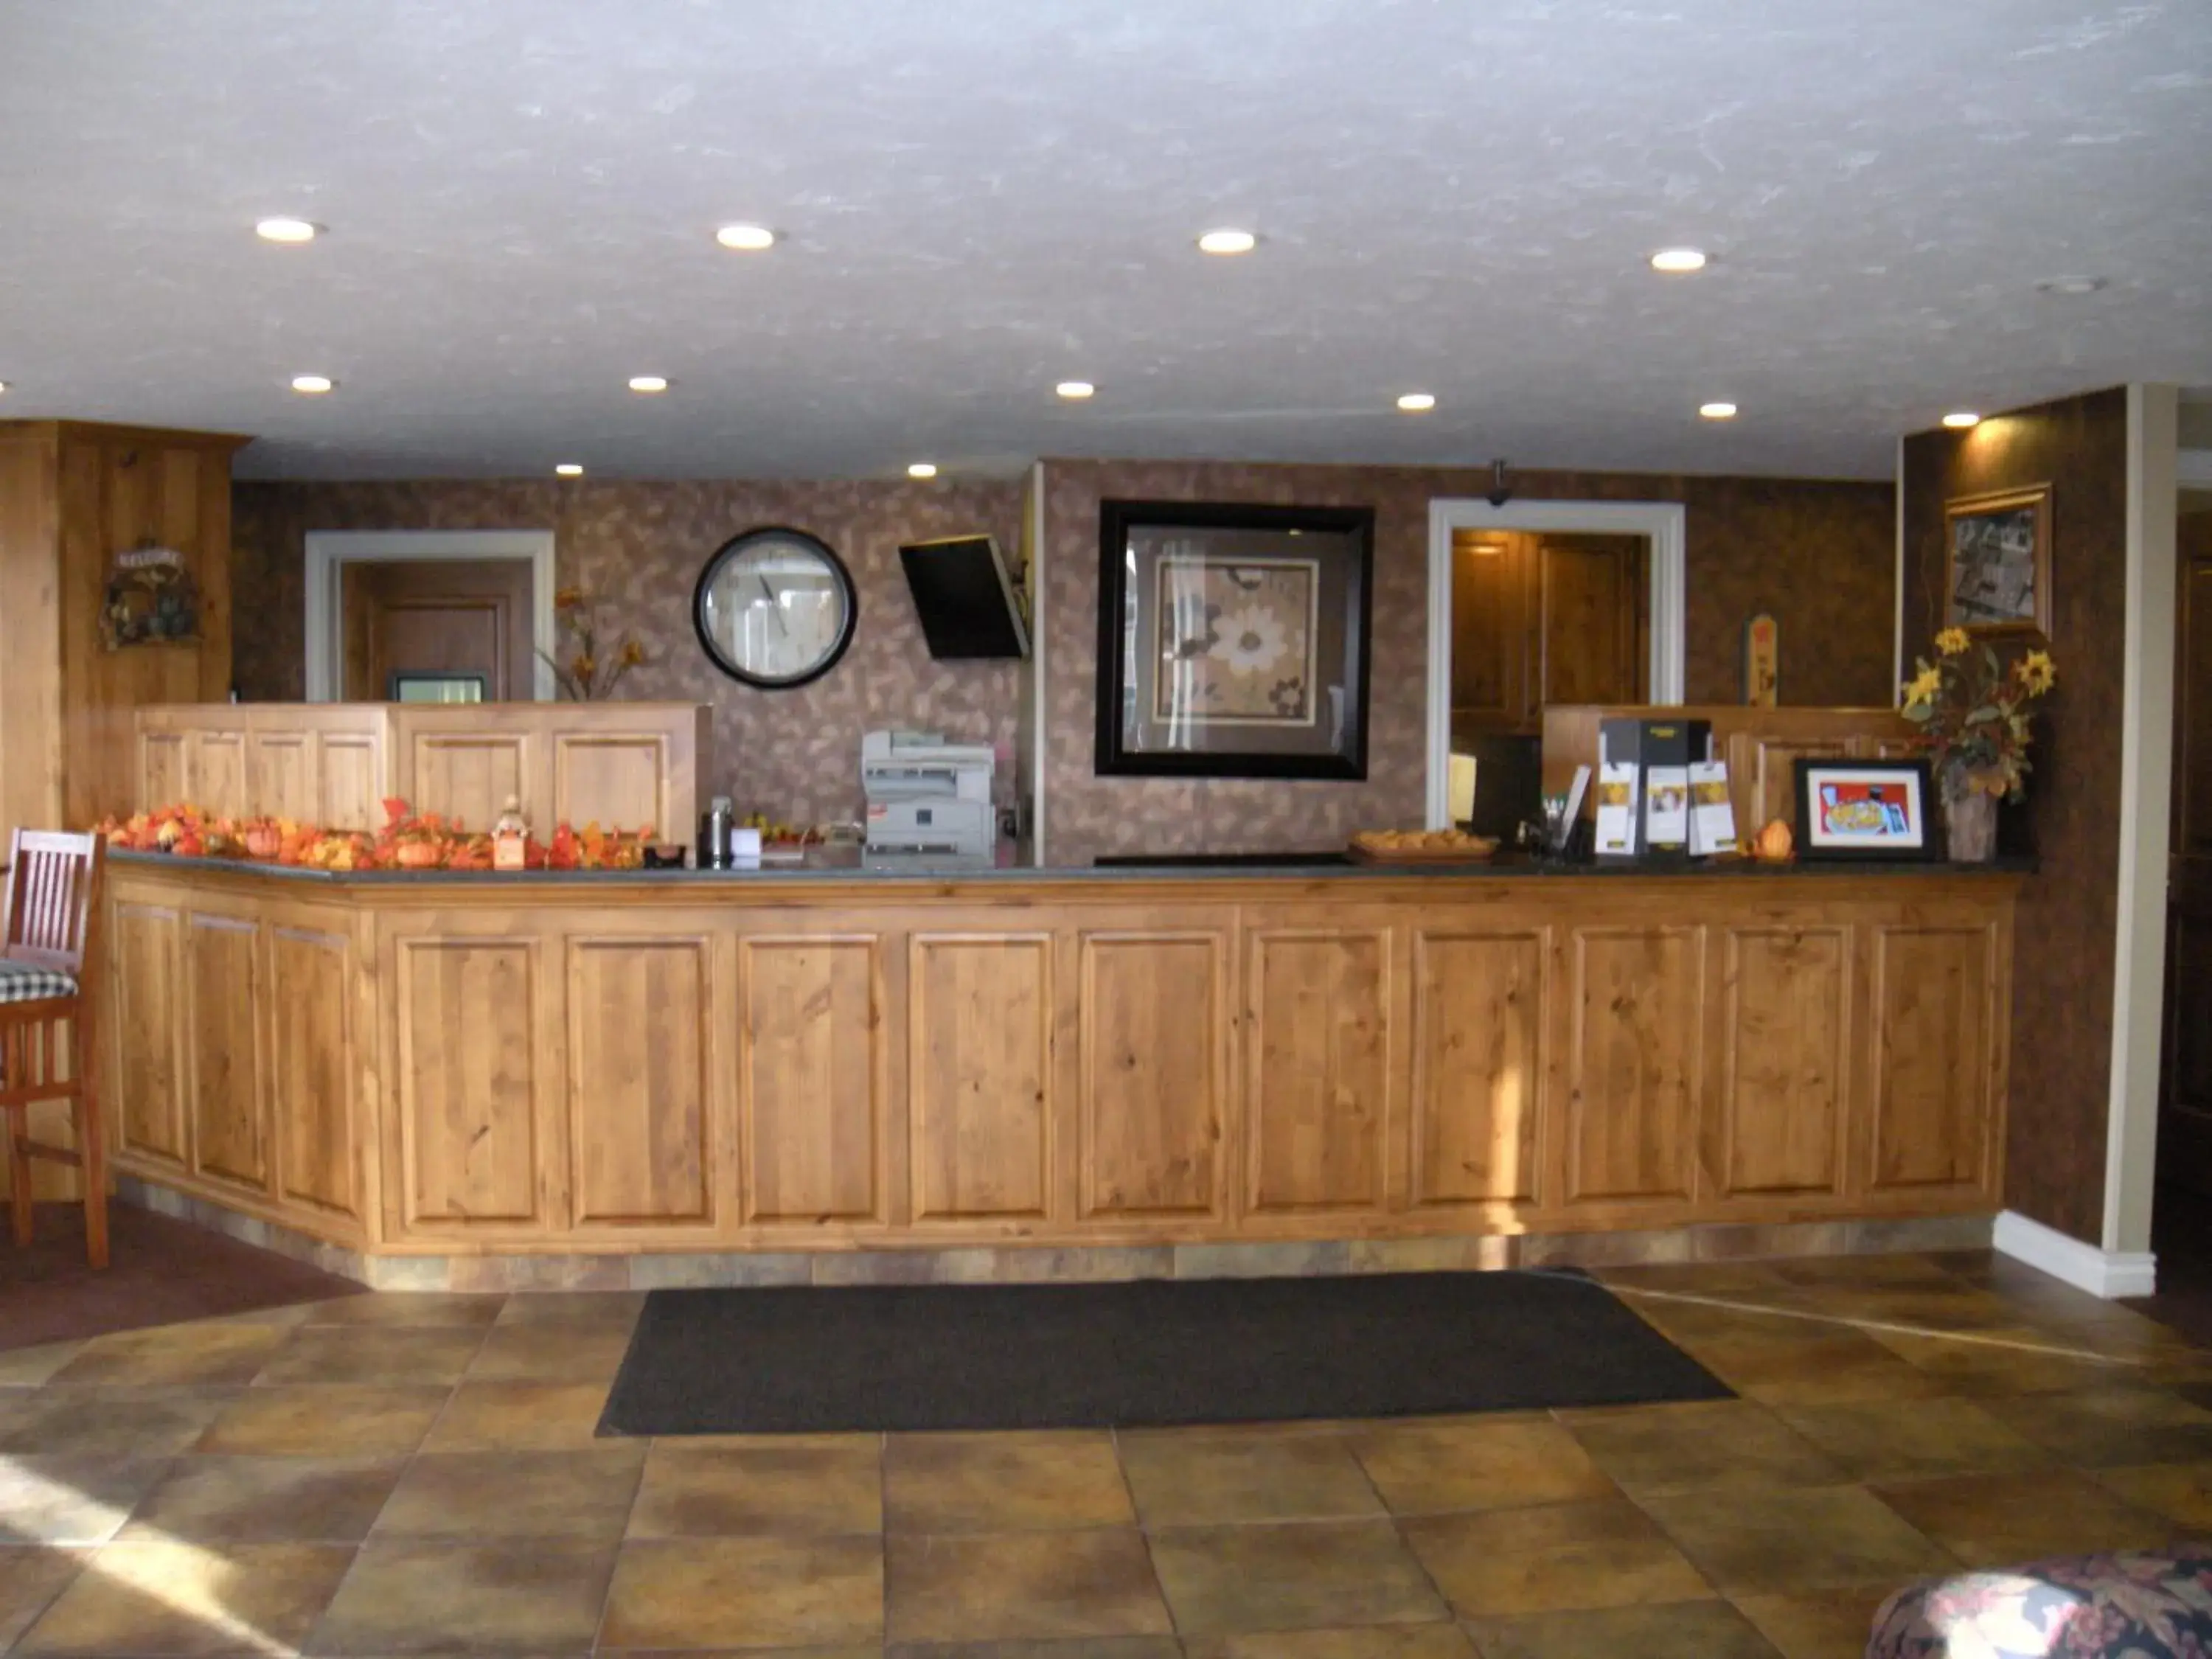 Lobby or reception, Lobby/Reception in Motel West